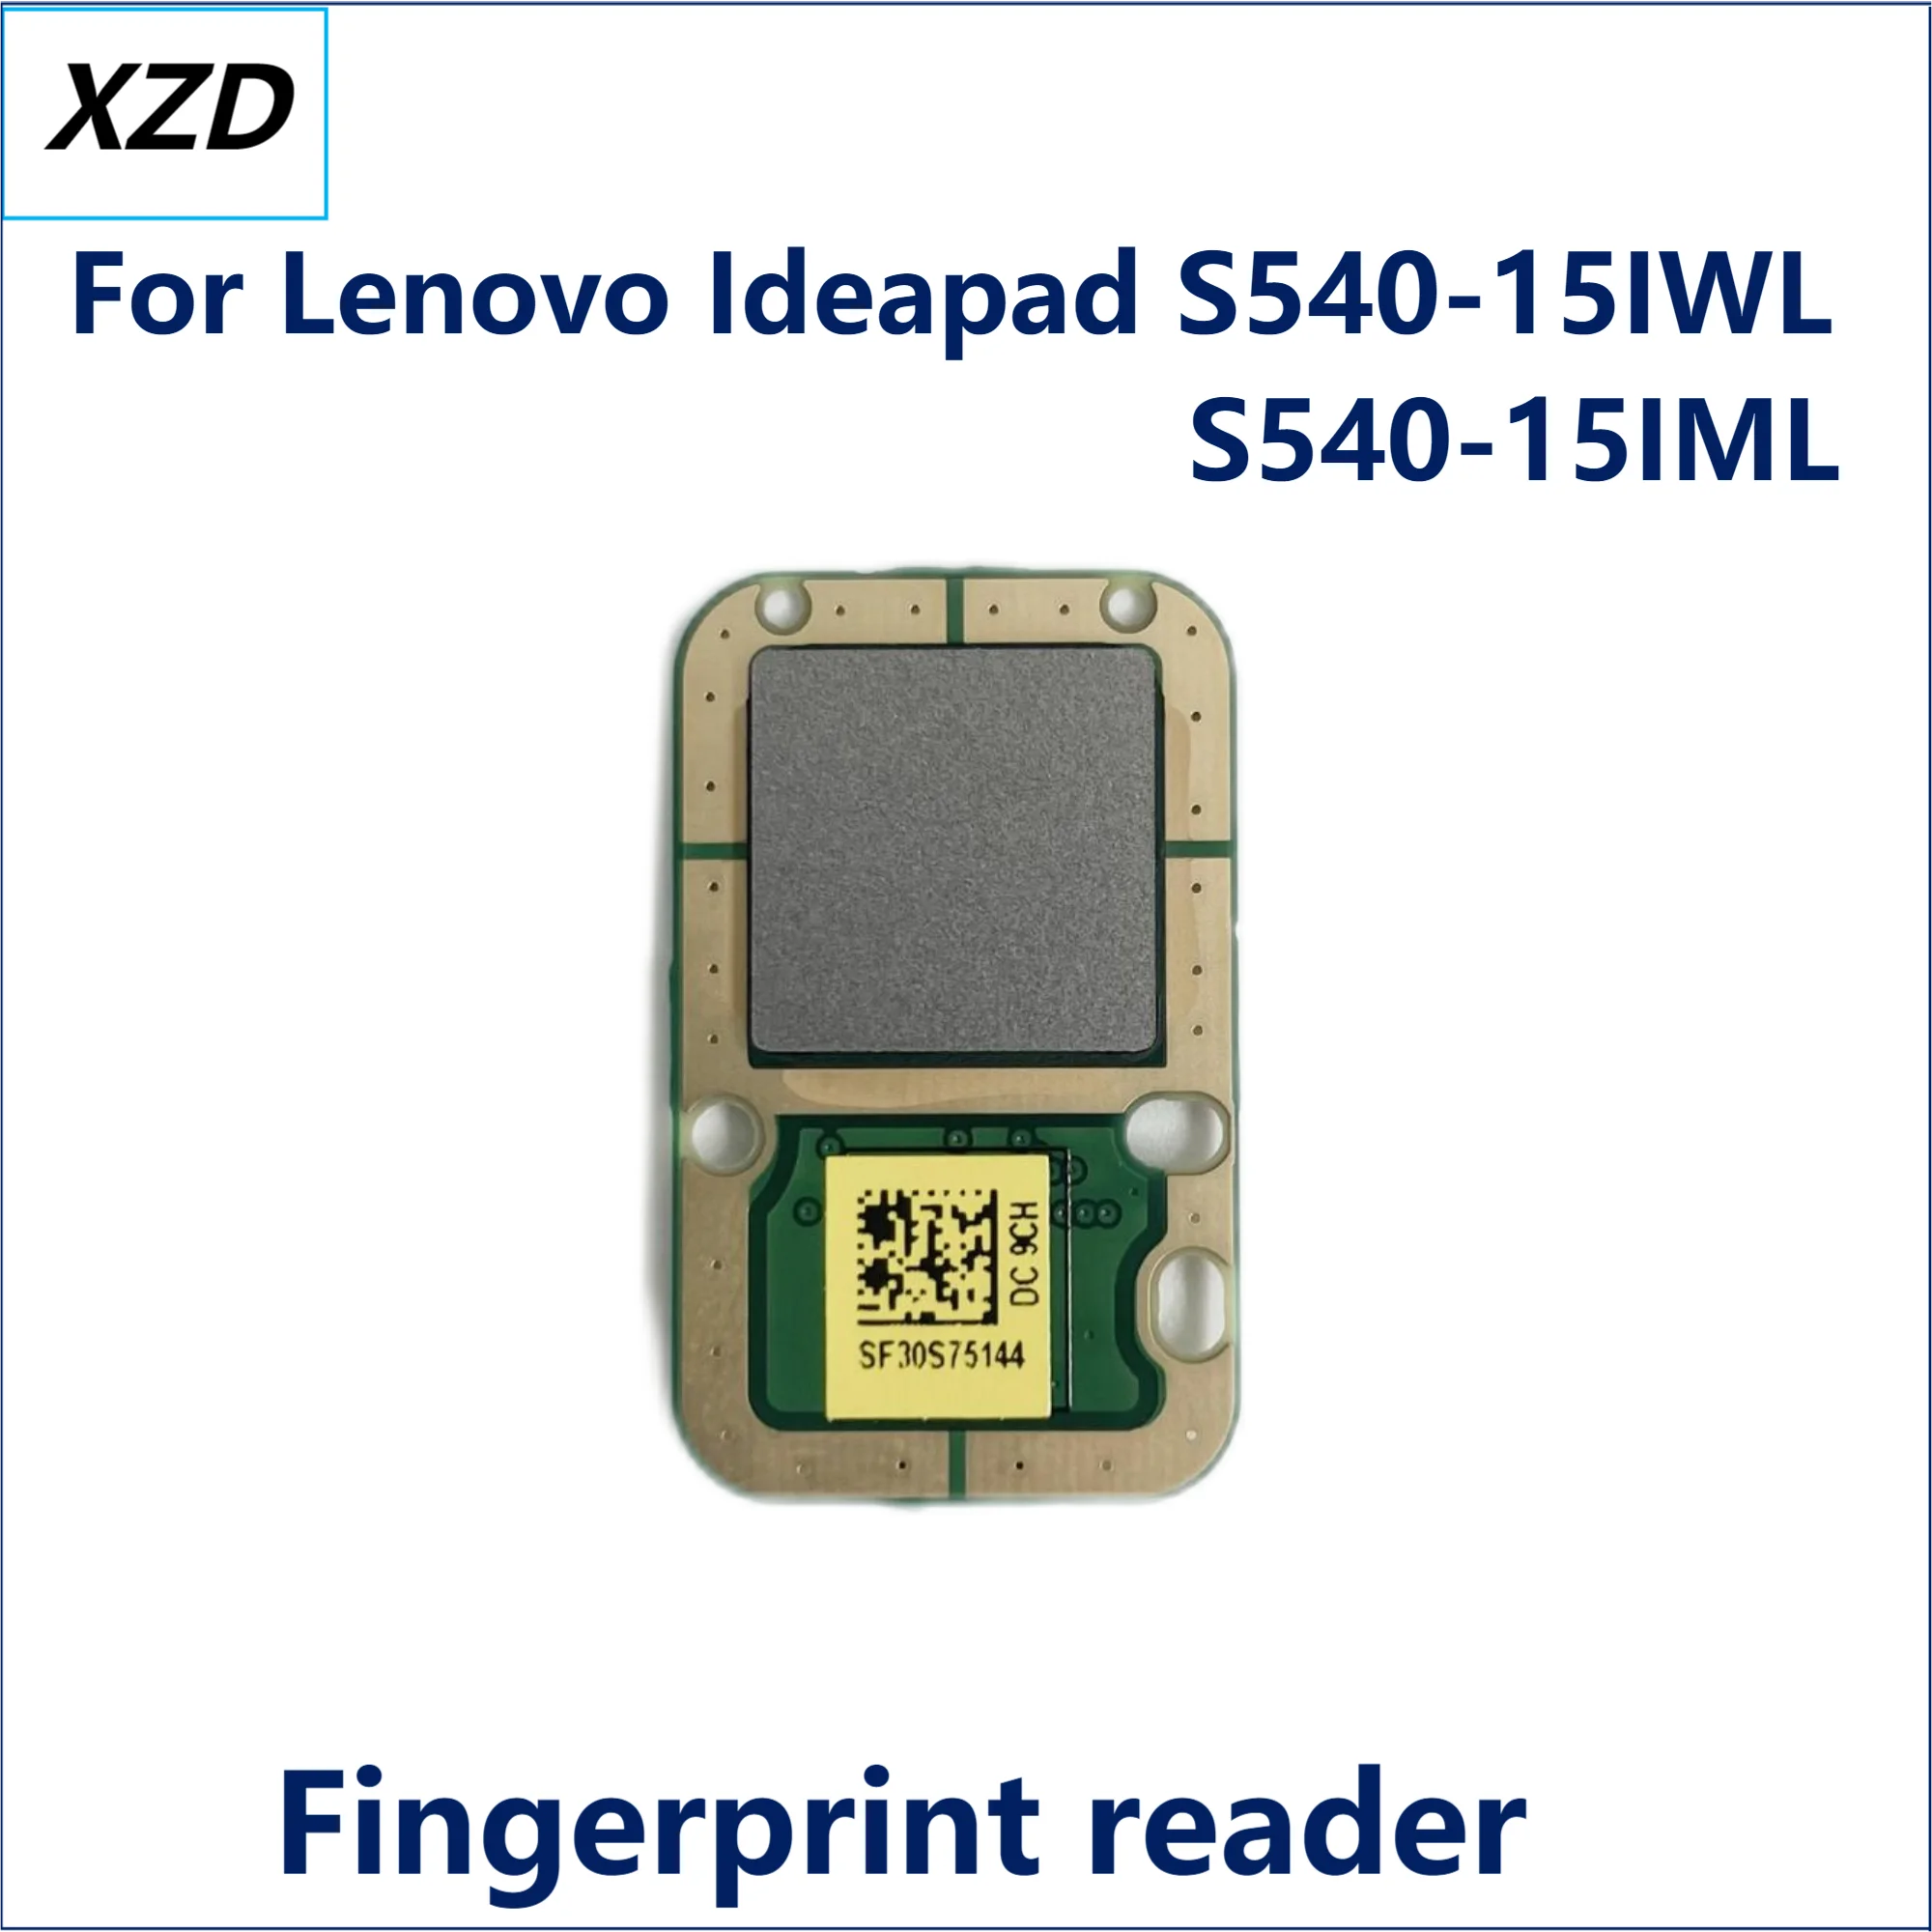 

For Lenovo ideapad S540-15IWL S540-15IML Laptop Fingerprint reader Fingerprint device silver gray NEW 100% Working 5C50S24925